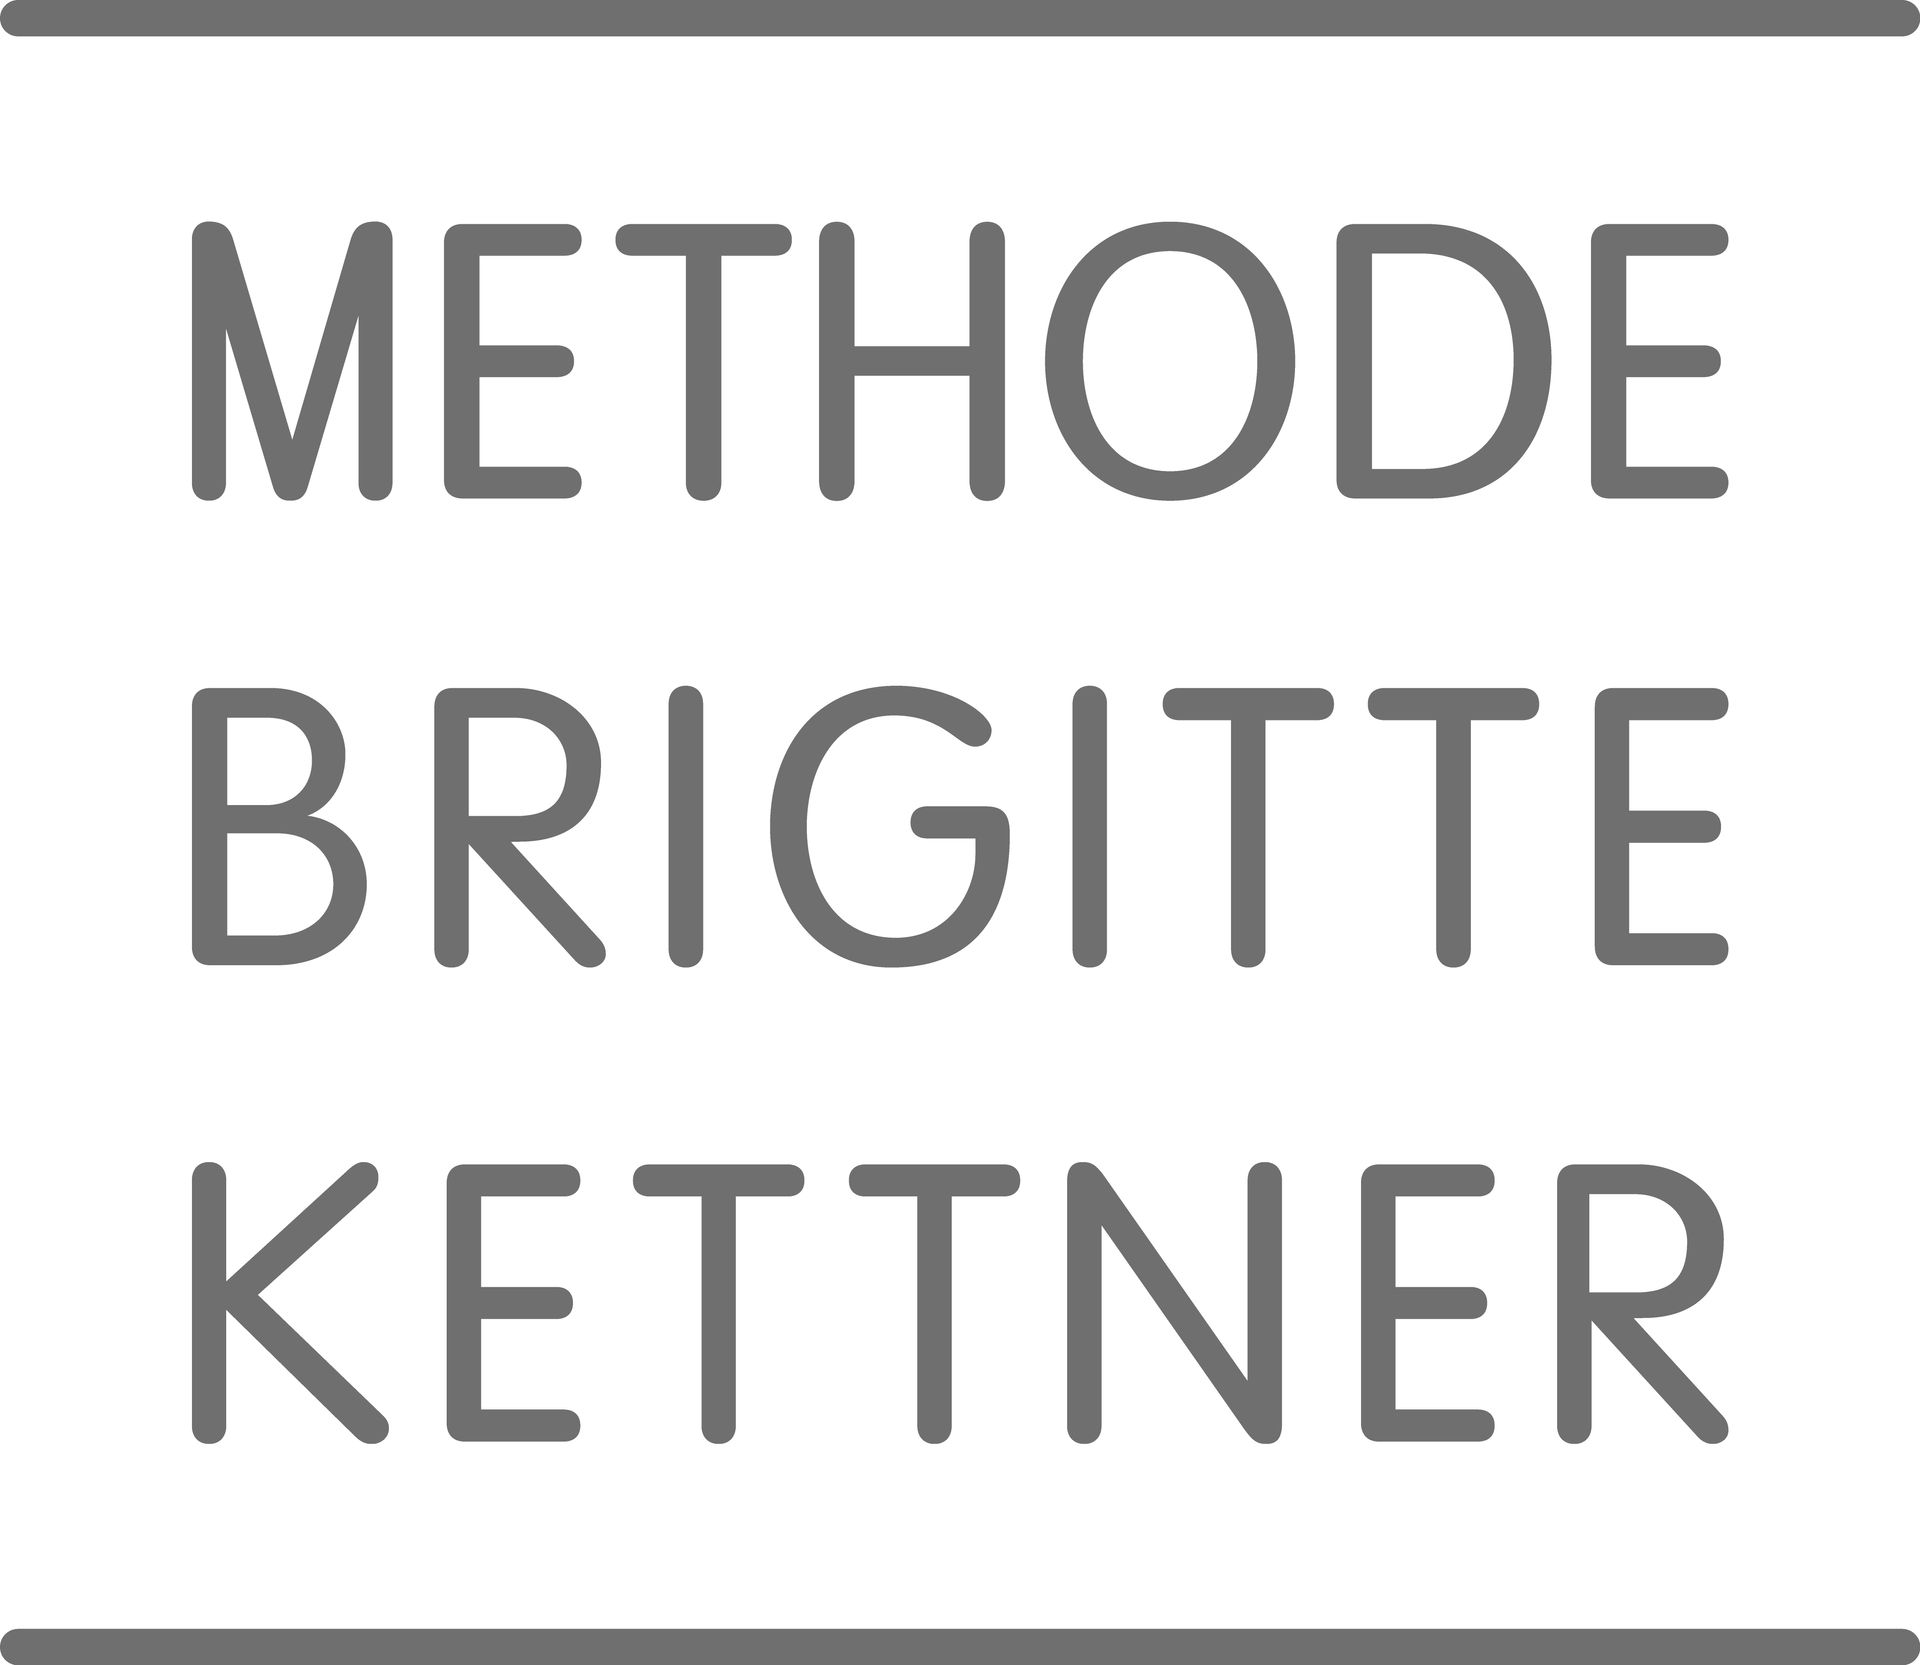 logo methode brigitte kettner